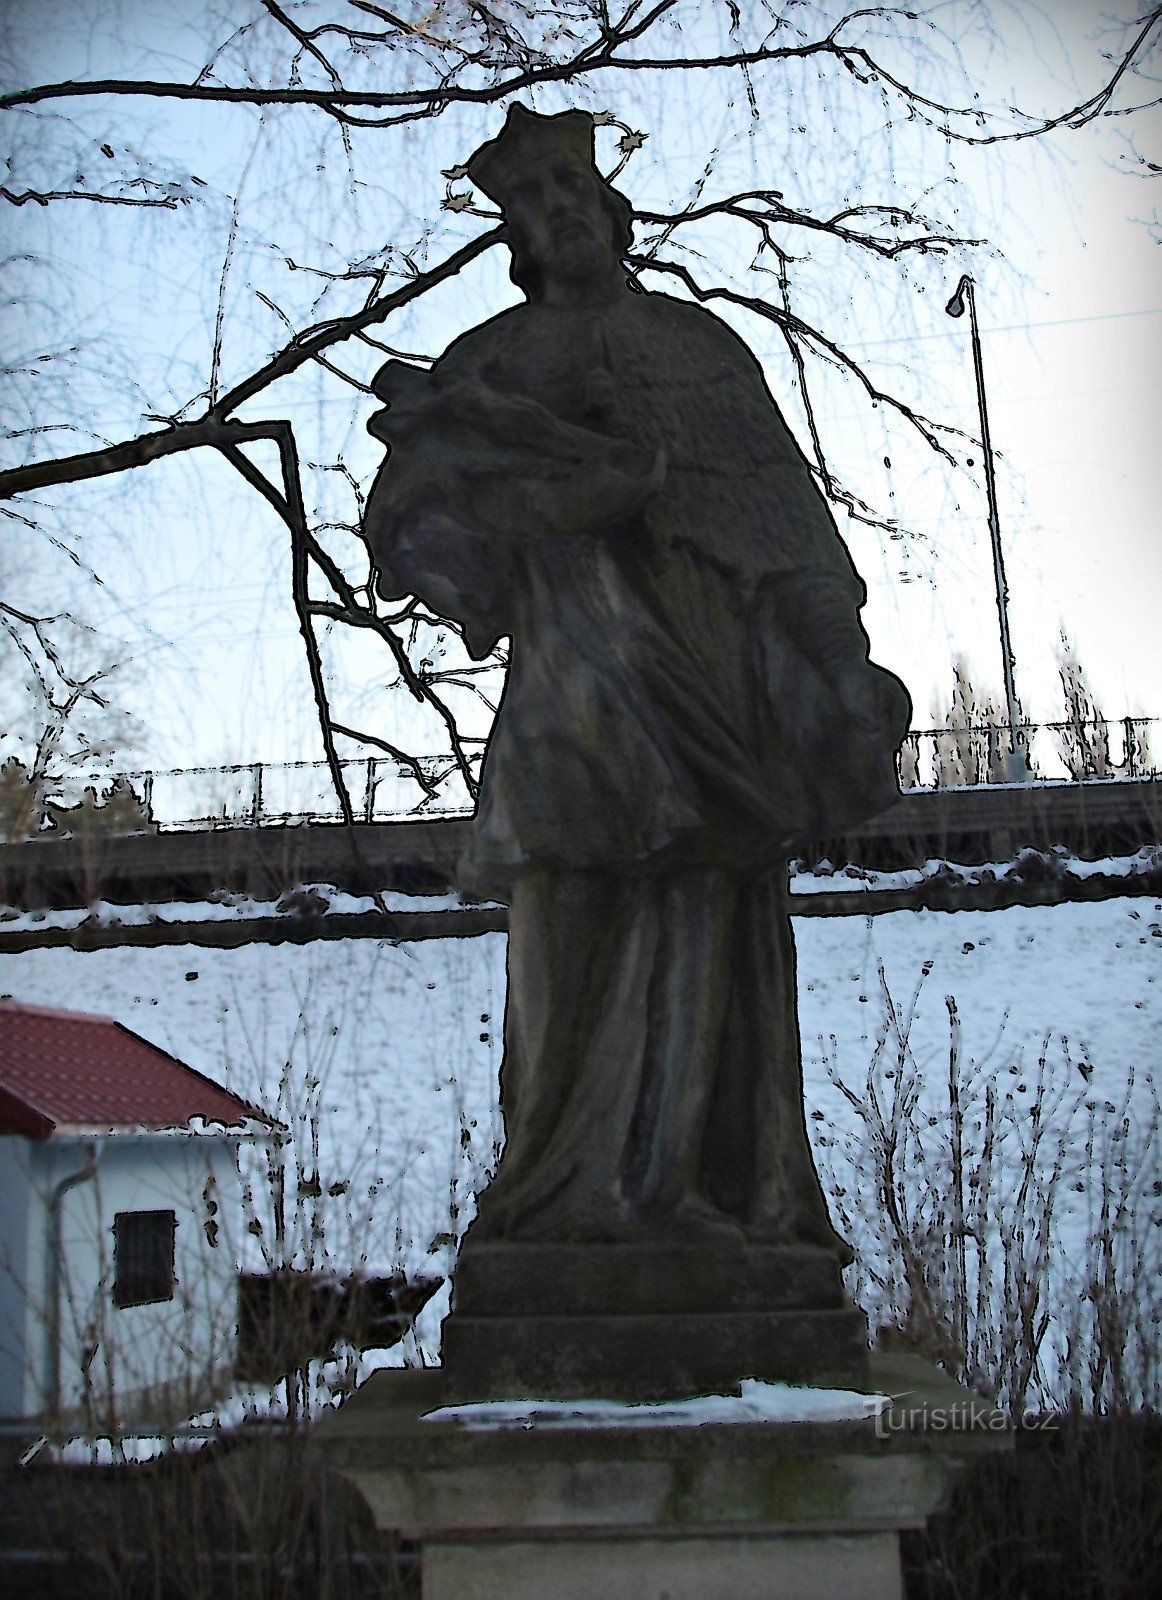 Zlín - Nepomuki Szent János szobra